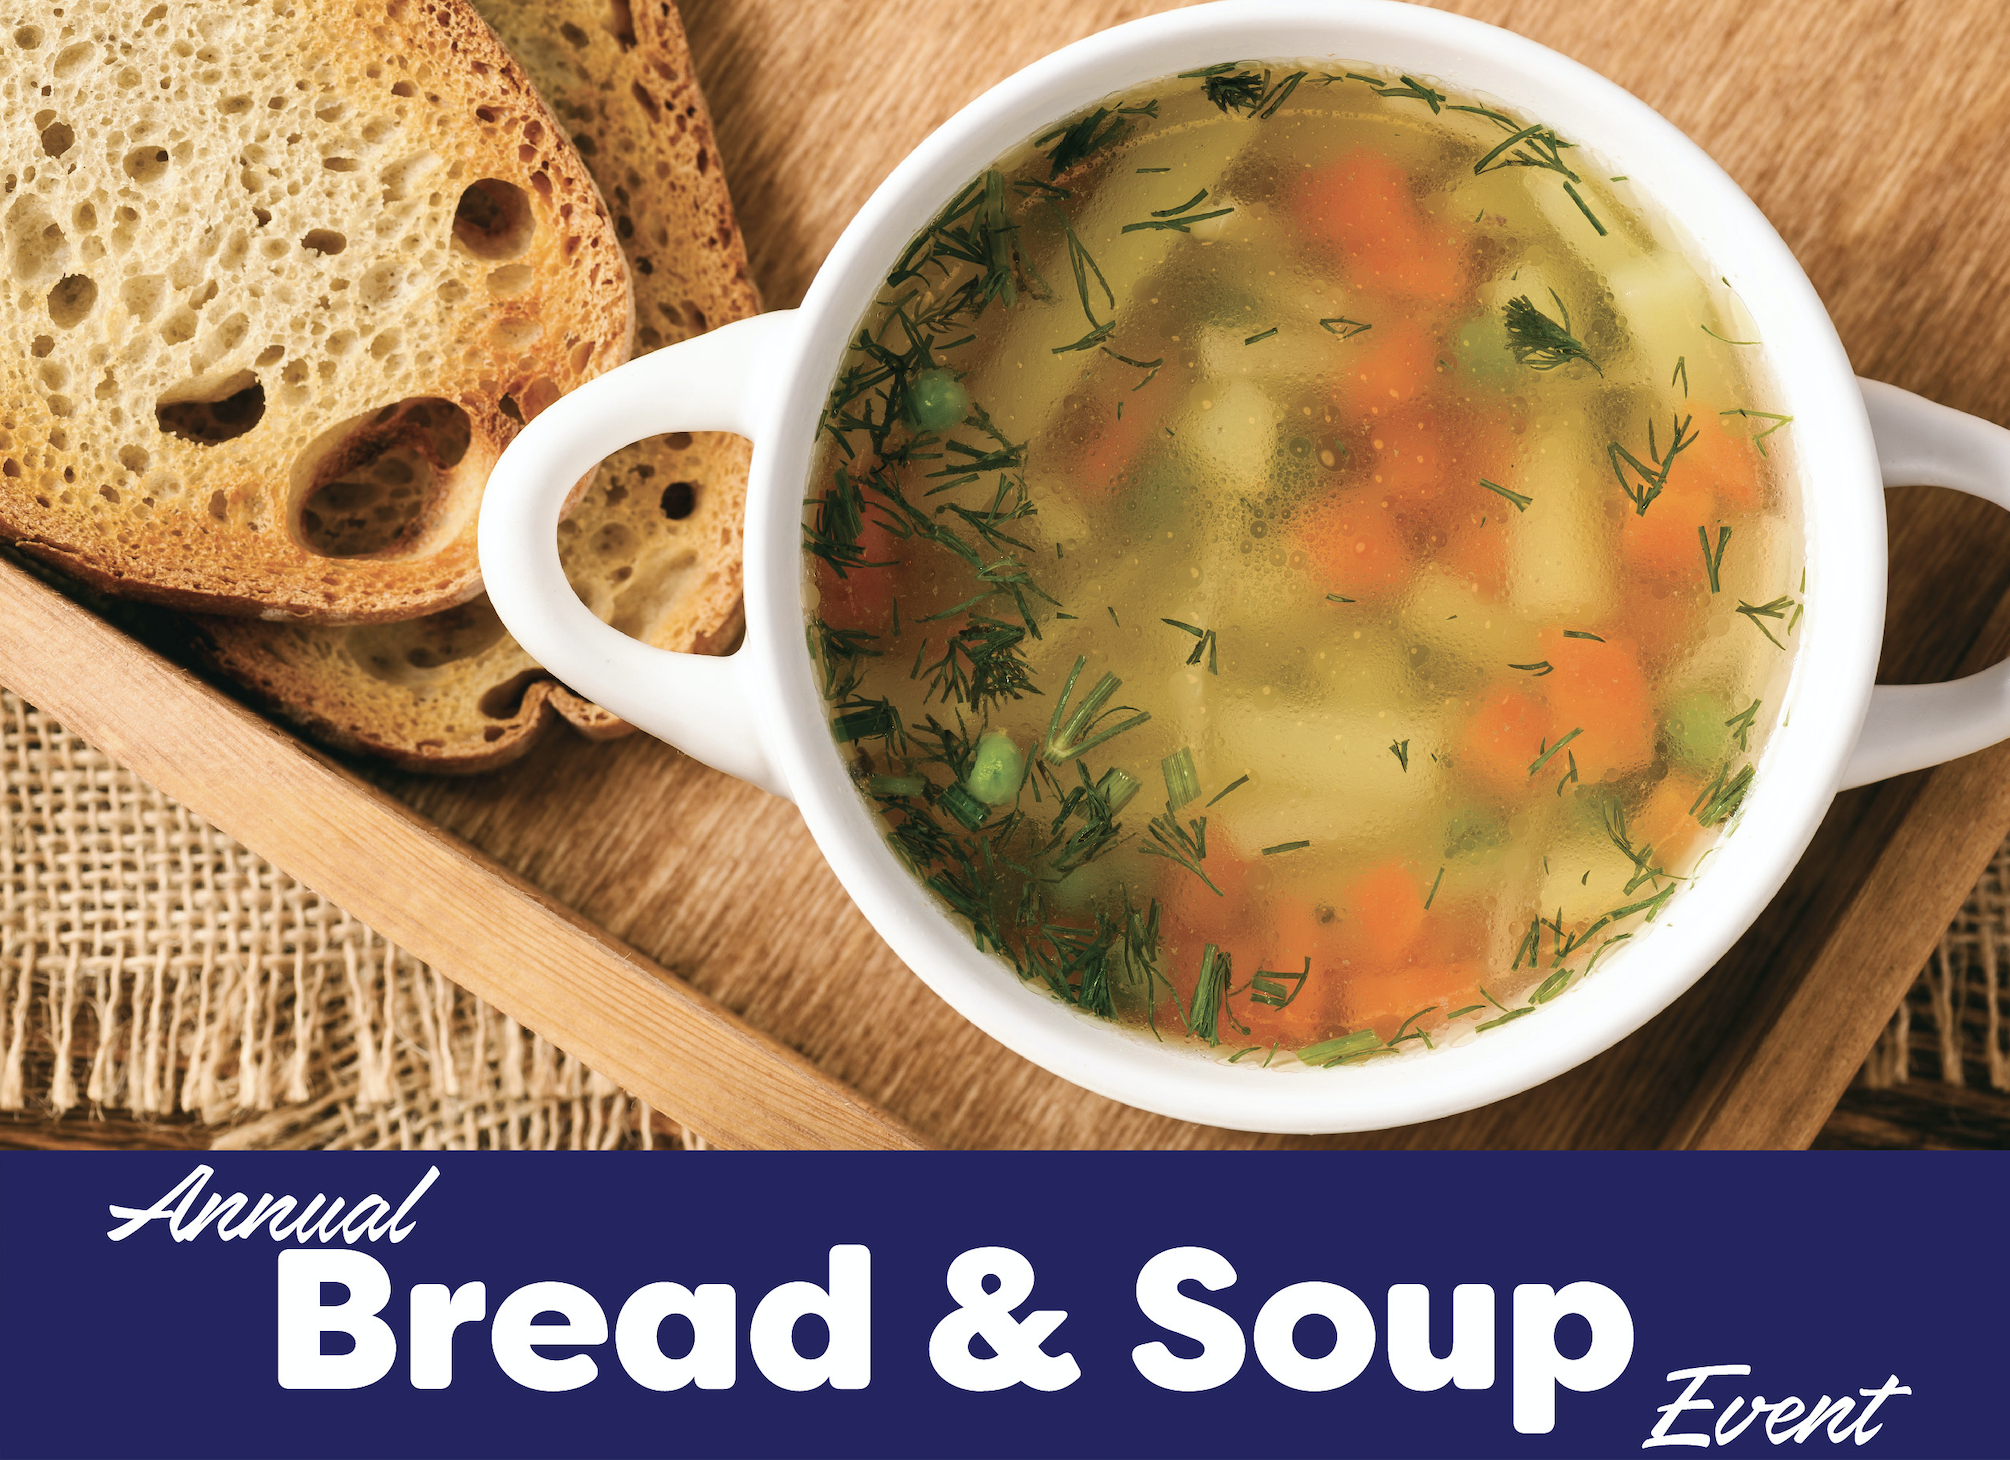 Annual Bread & Soup Event